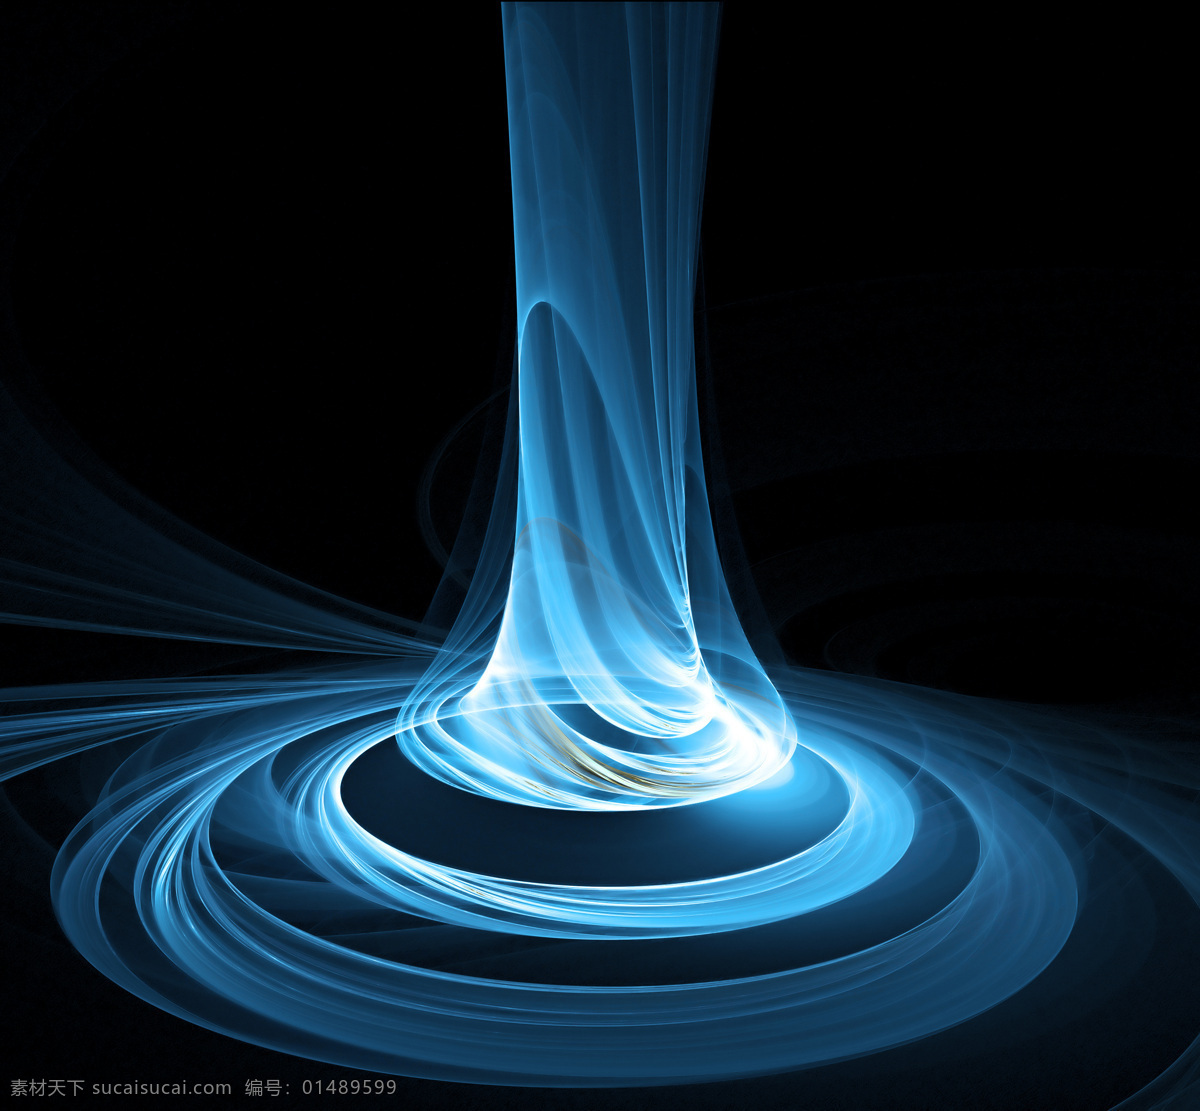 蓝色漩涡 光束 蓝色 漩涡 宇宙 圆柱 科技 背景底纹 底纹边框